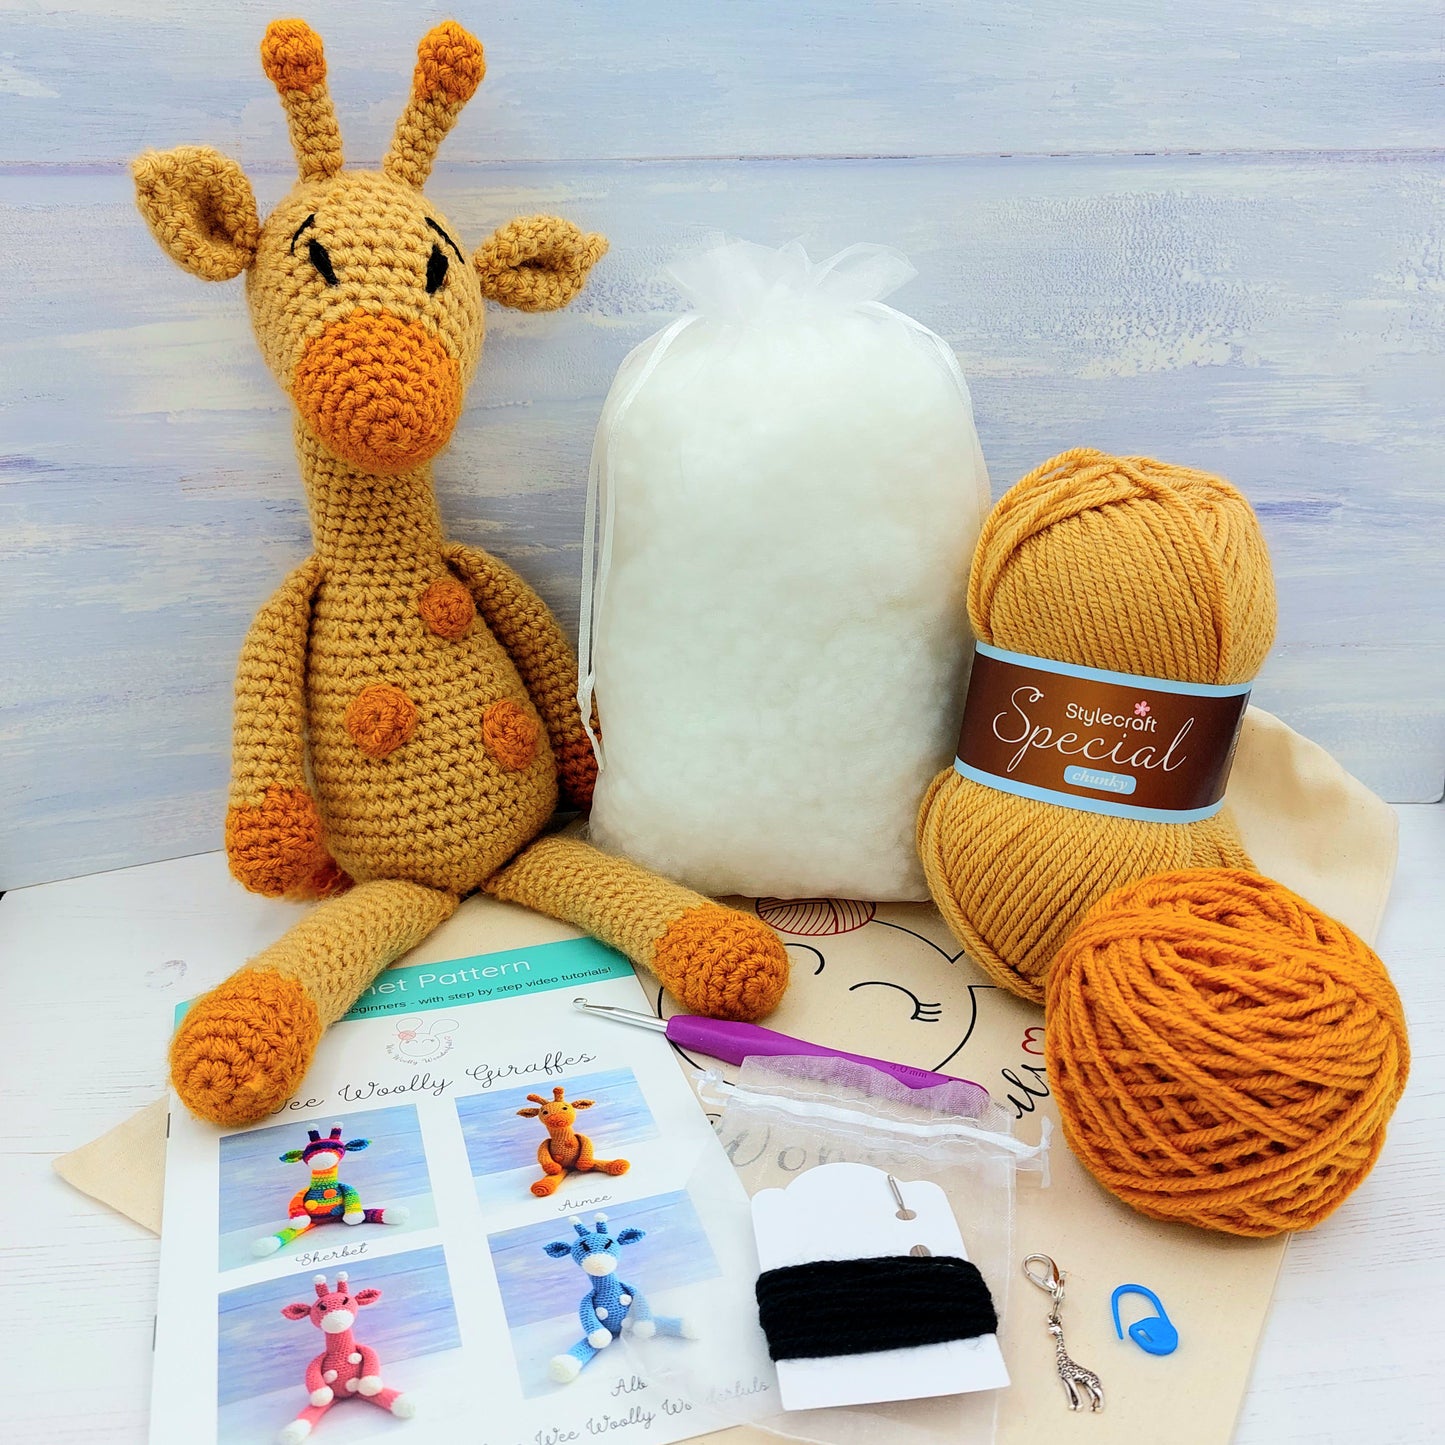 Giraffe Crochet Kit - Complete Beginner Kit with Video Tutorials